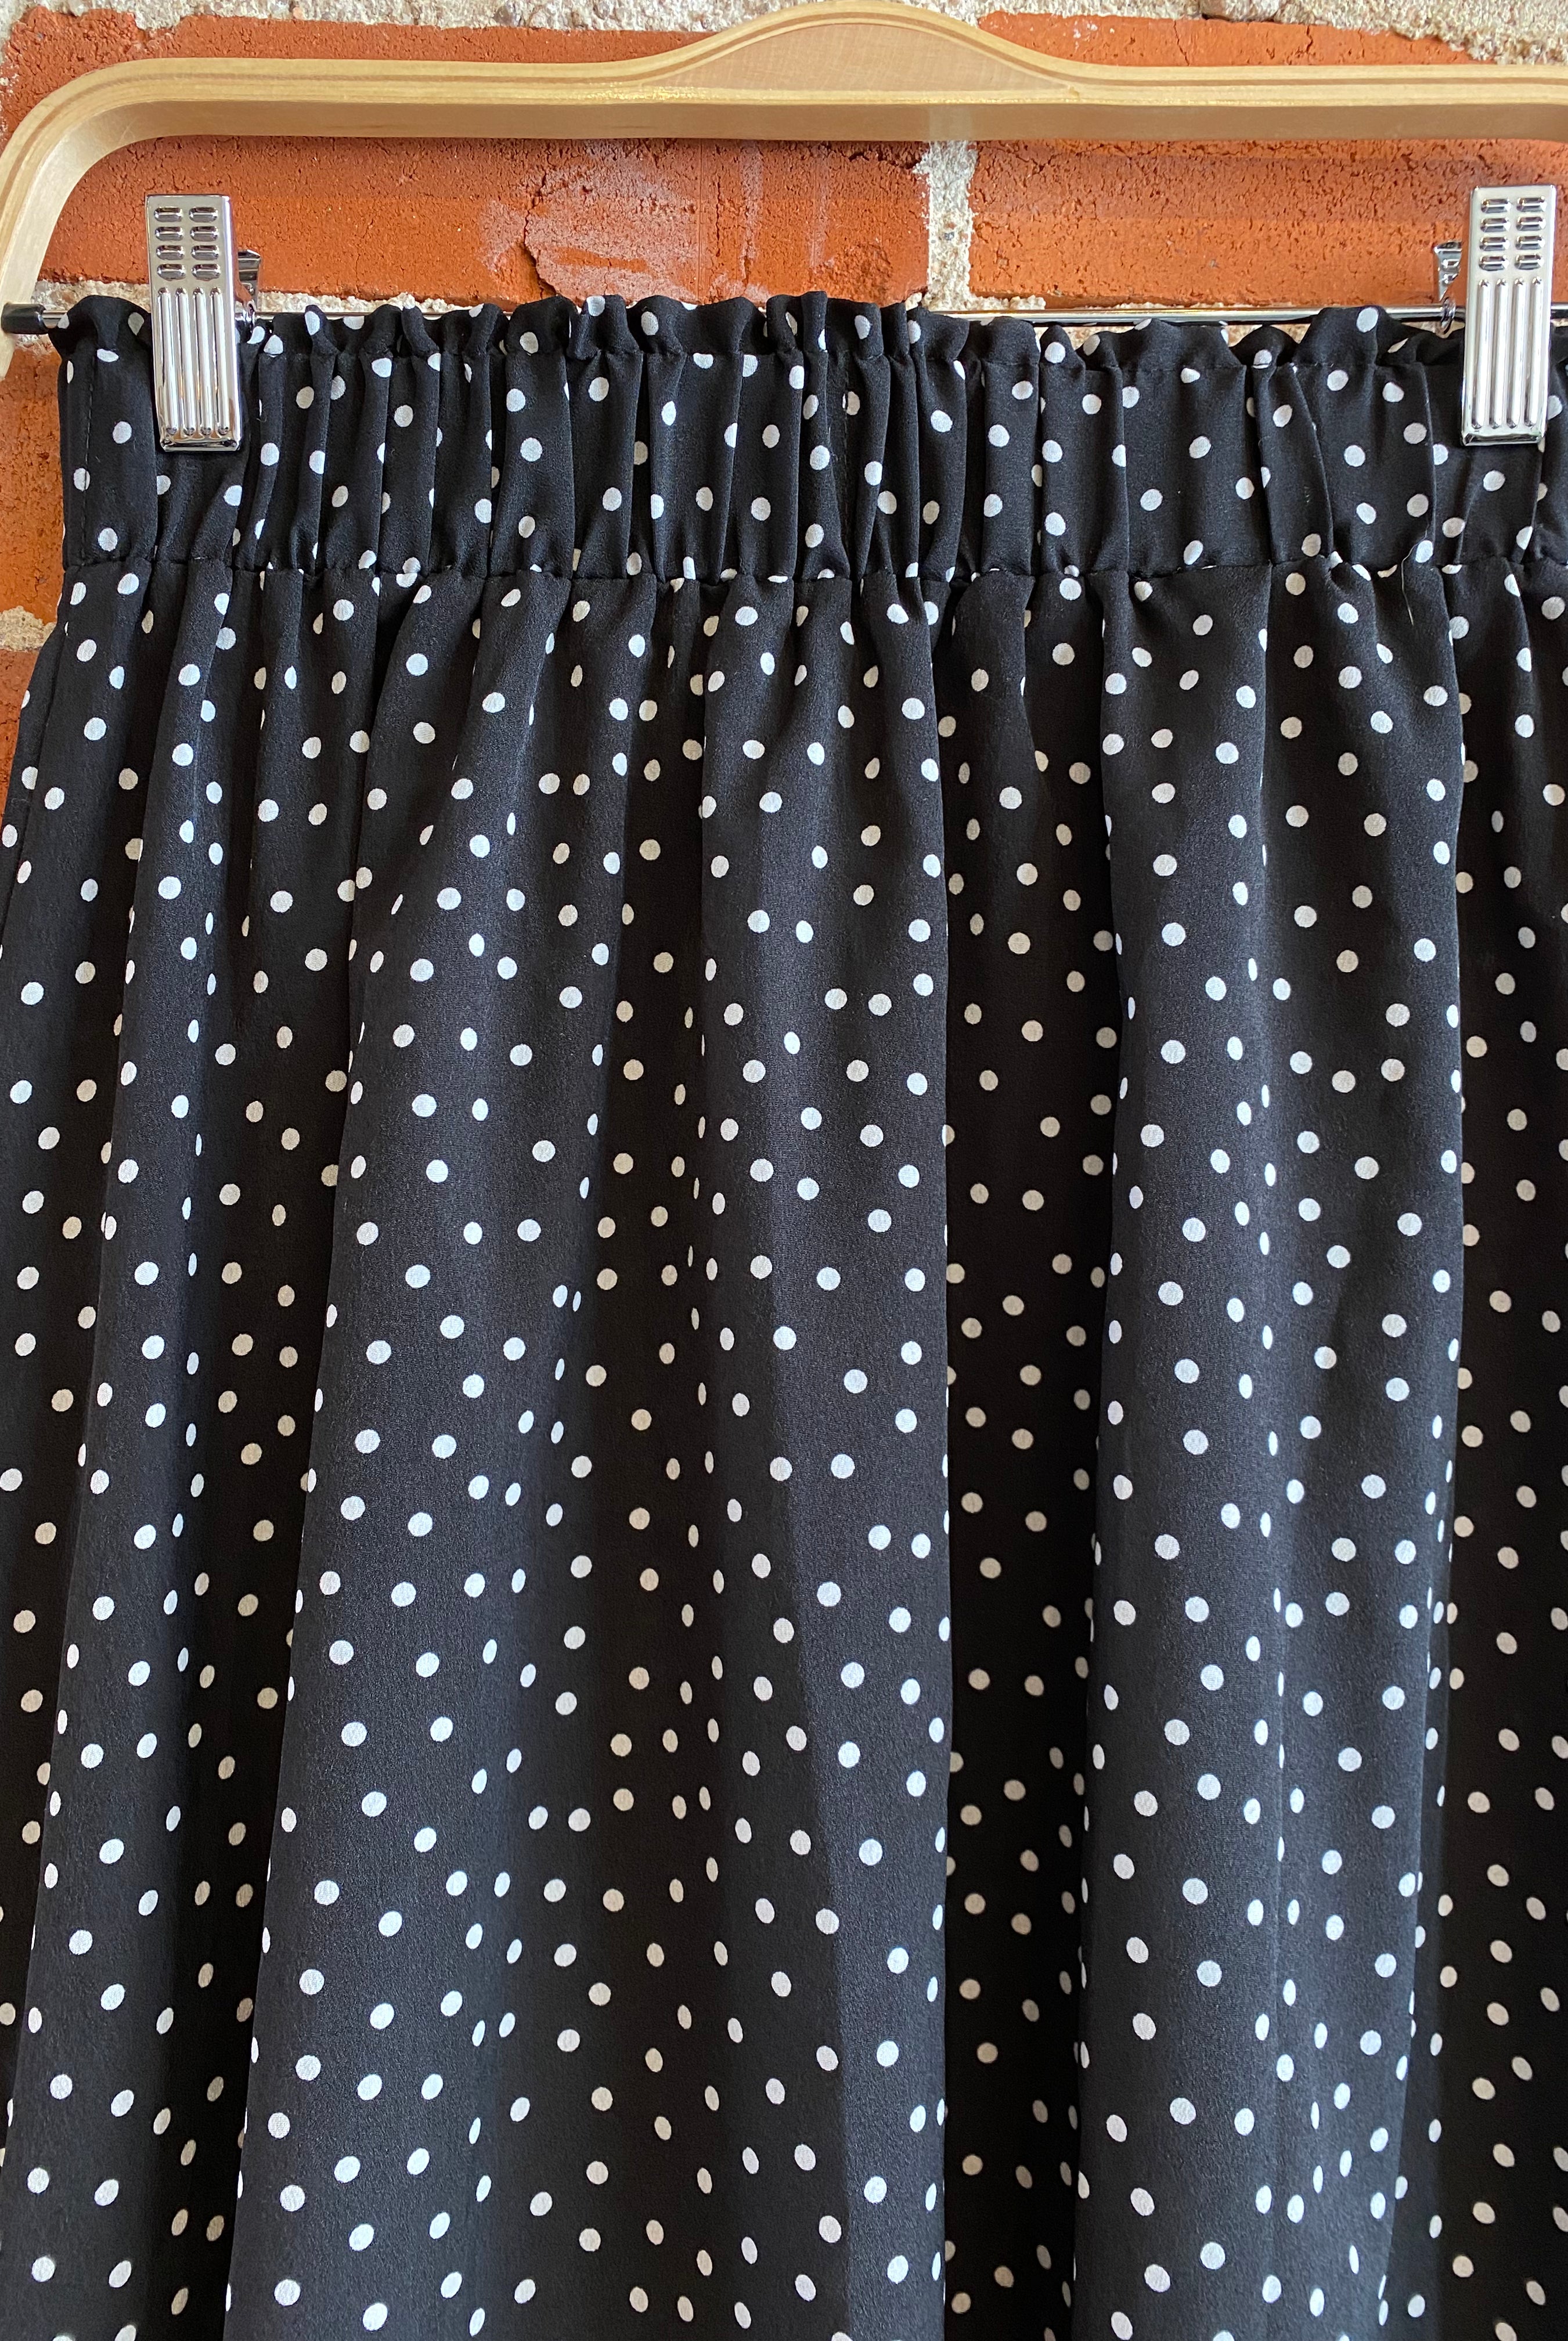 
  
  Black and white polka dot midi skirt- Size S
  
